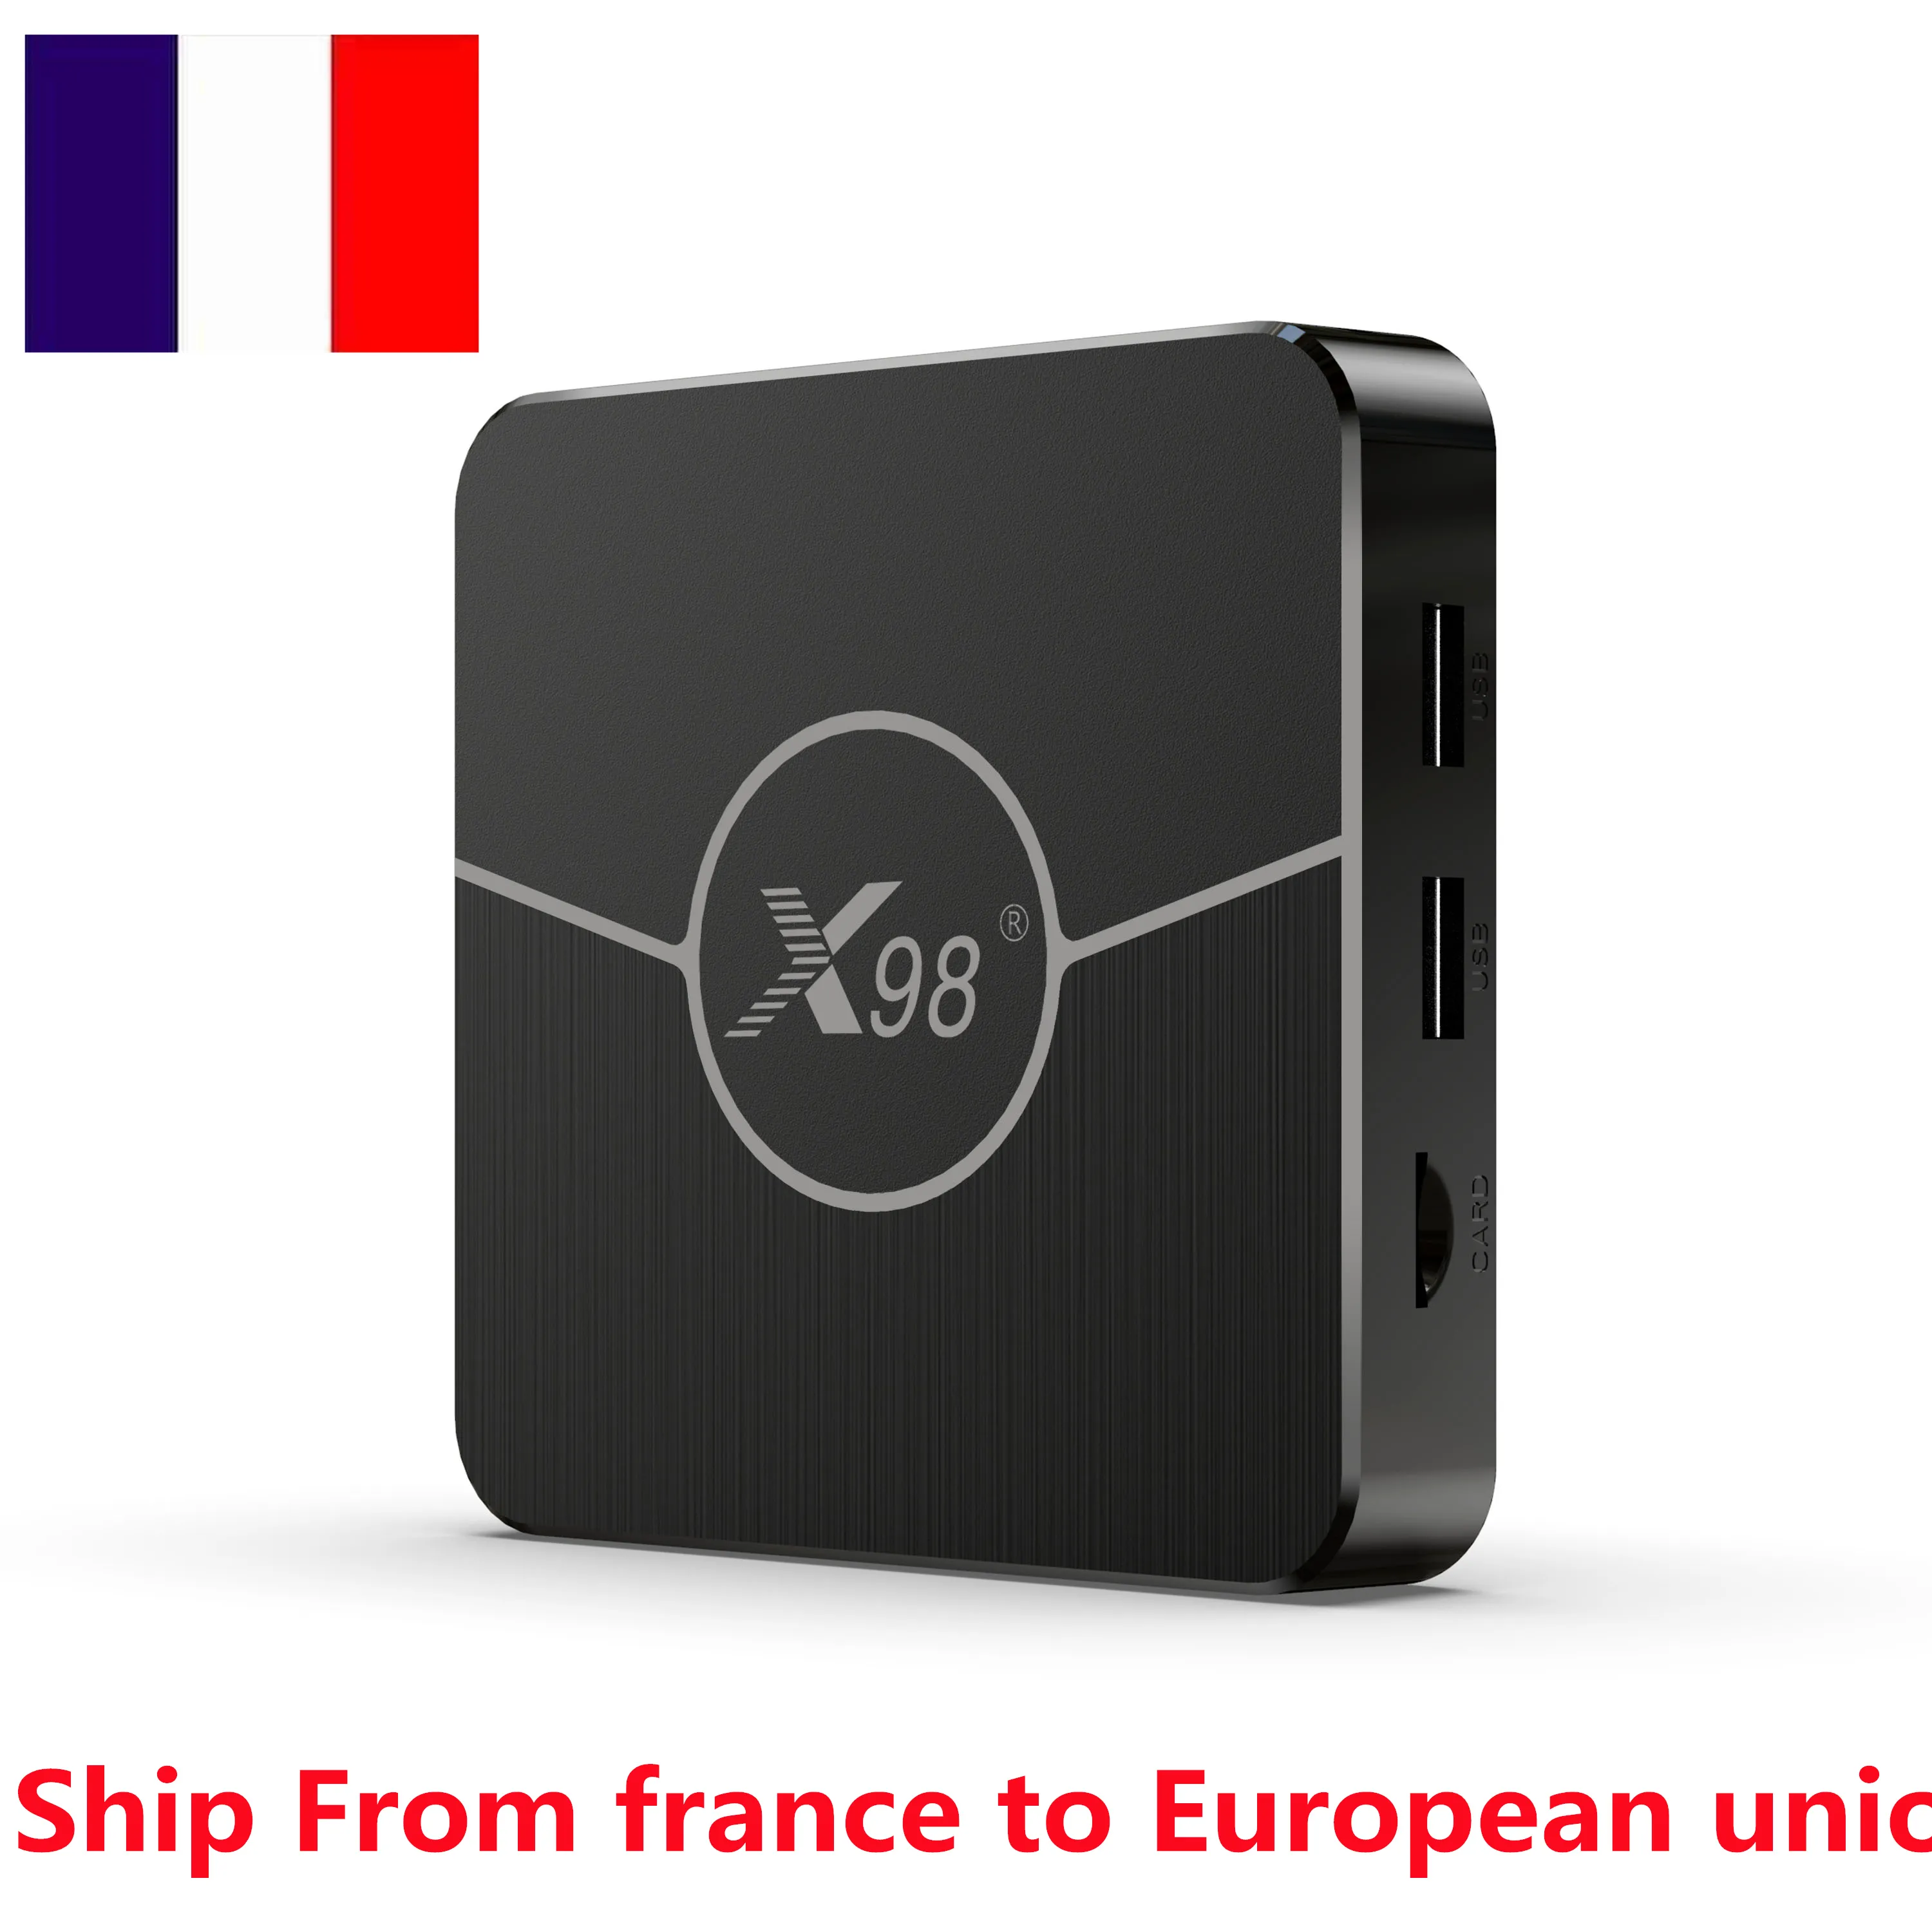 Frankrike i-Stock x98 plus TV-låda Android11 ​​AMLOGIC S905W2 2GB RAM 16GB WiFi 2.4G 5G 4K AV1 Media Player Set Top Box